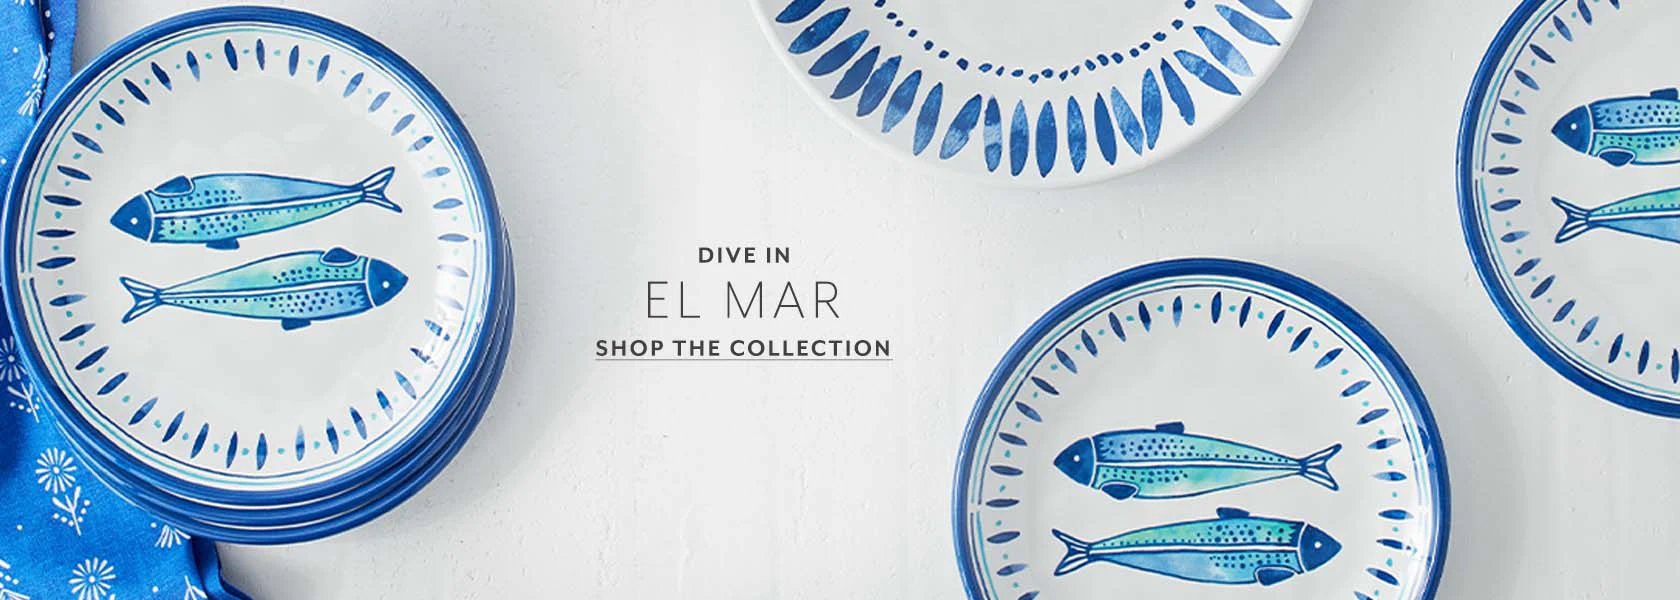 El Mar outdoor dinnerware, shop the collection.